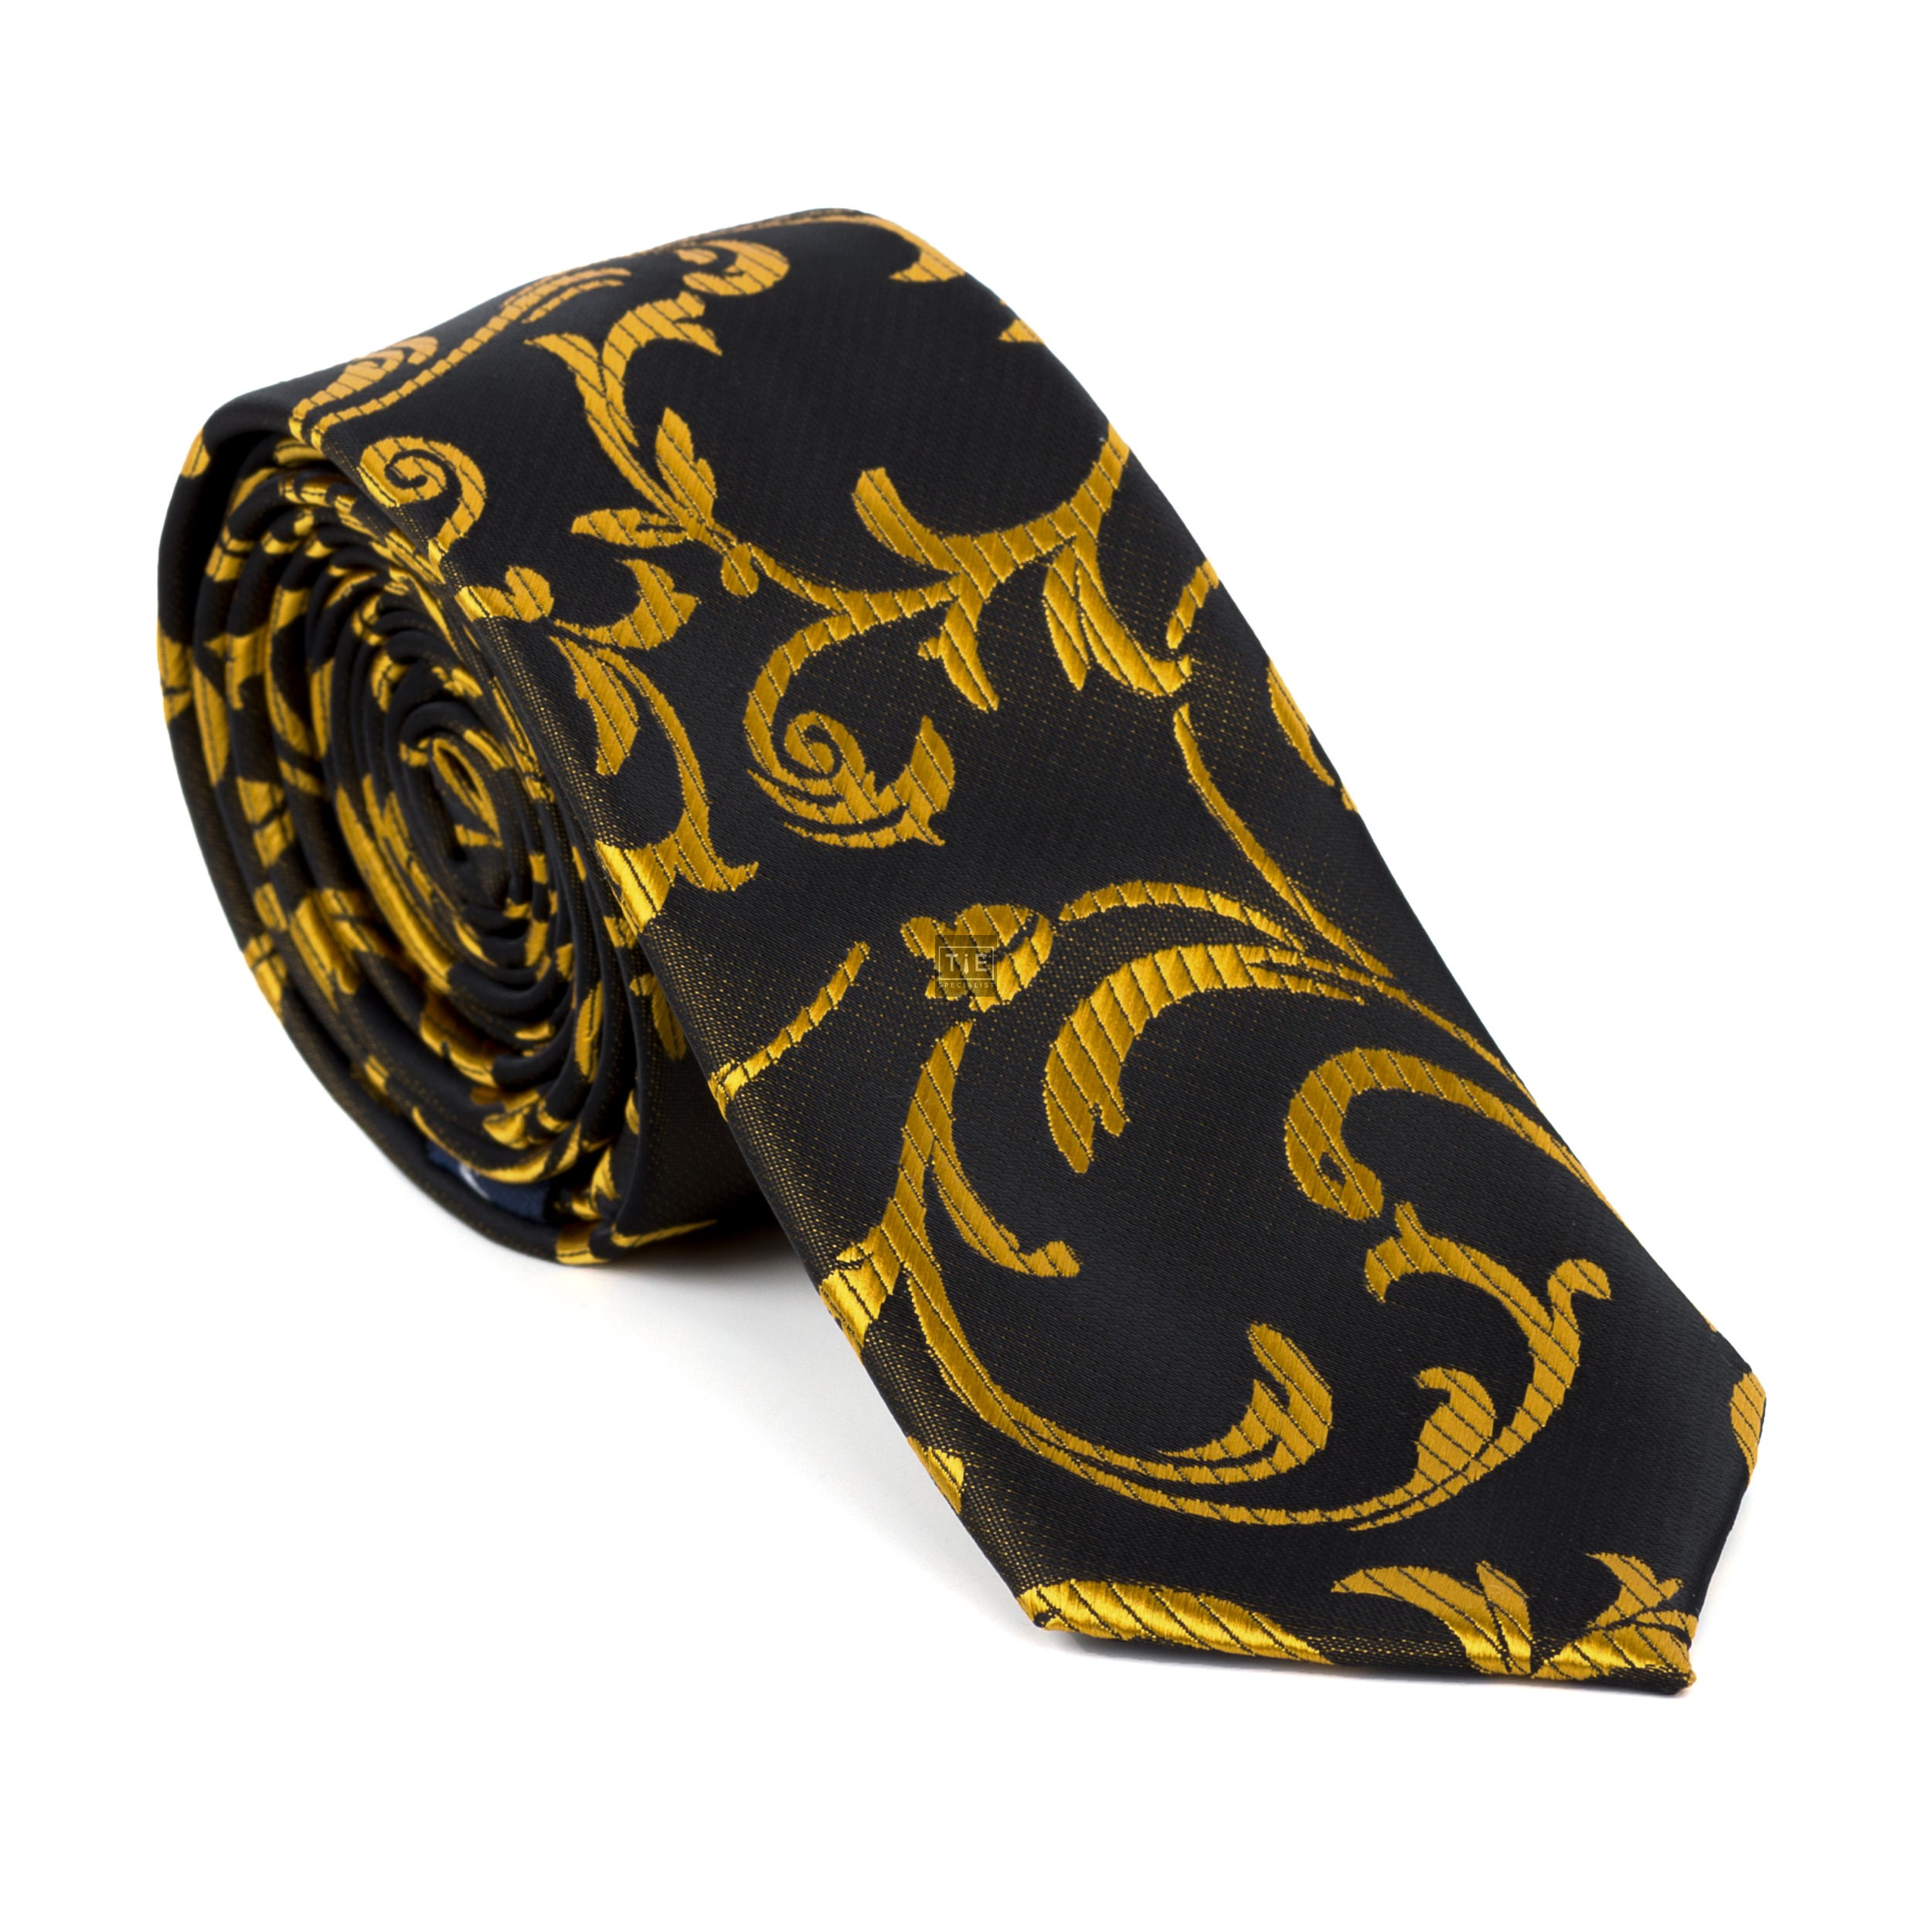 Gold on Black Swirl Leaf Slim Tie - Patterned Black Slim Tie